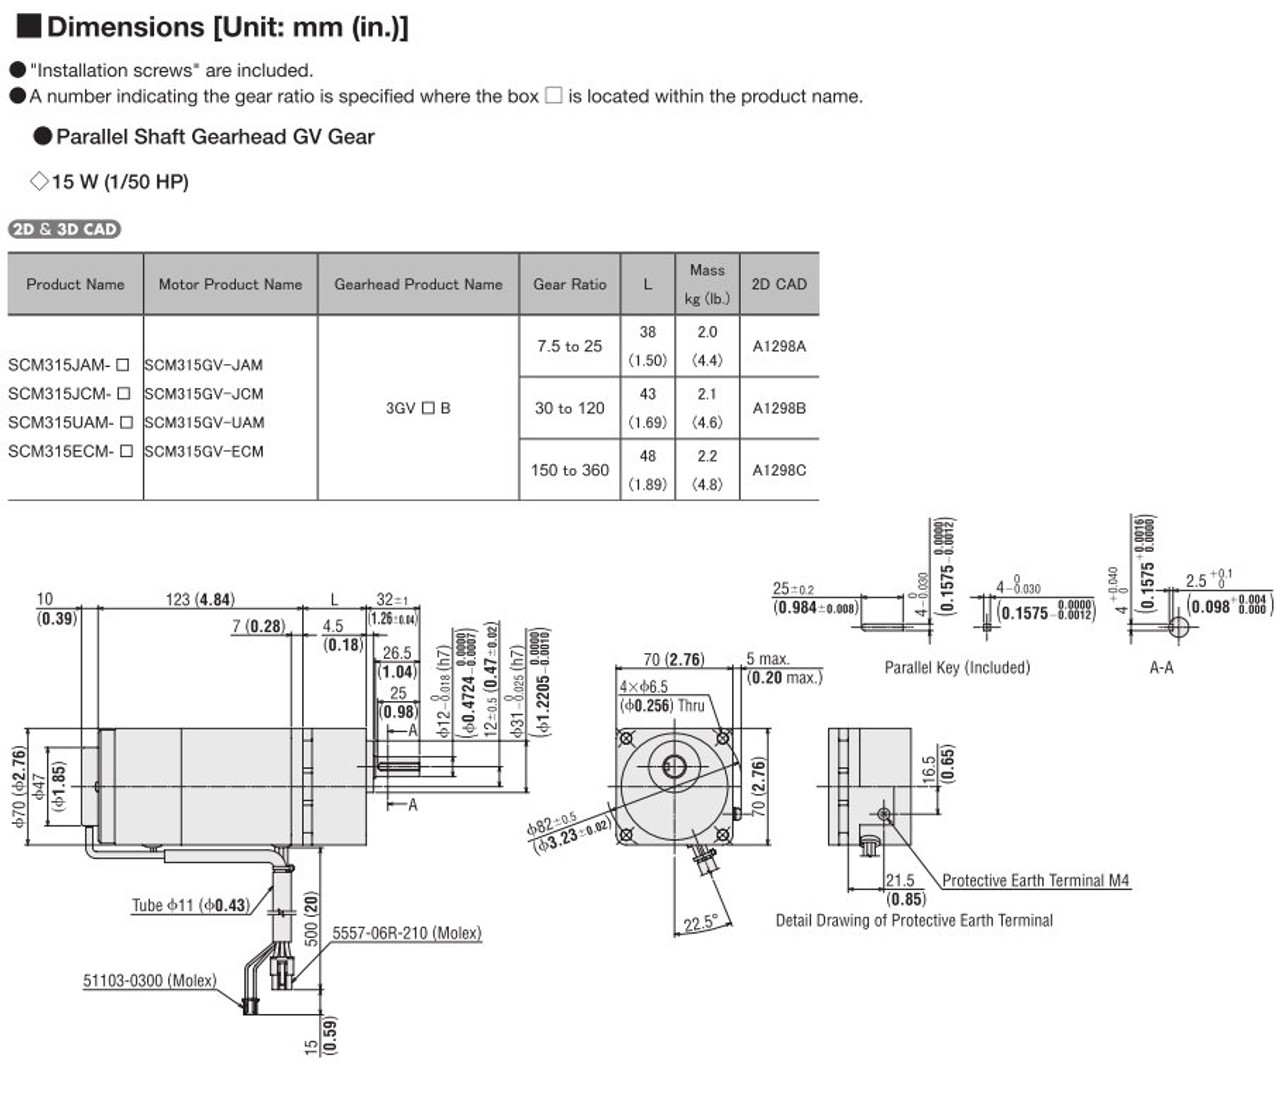 SCM315ECM-75 - Dimensions